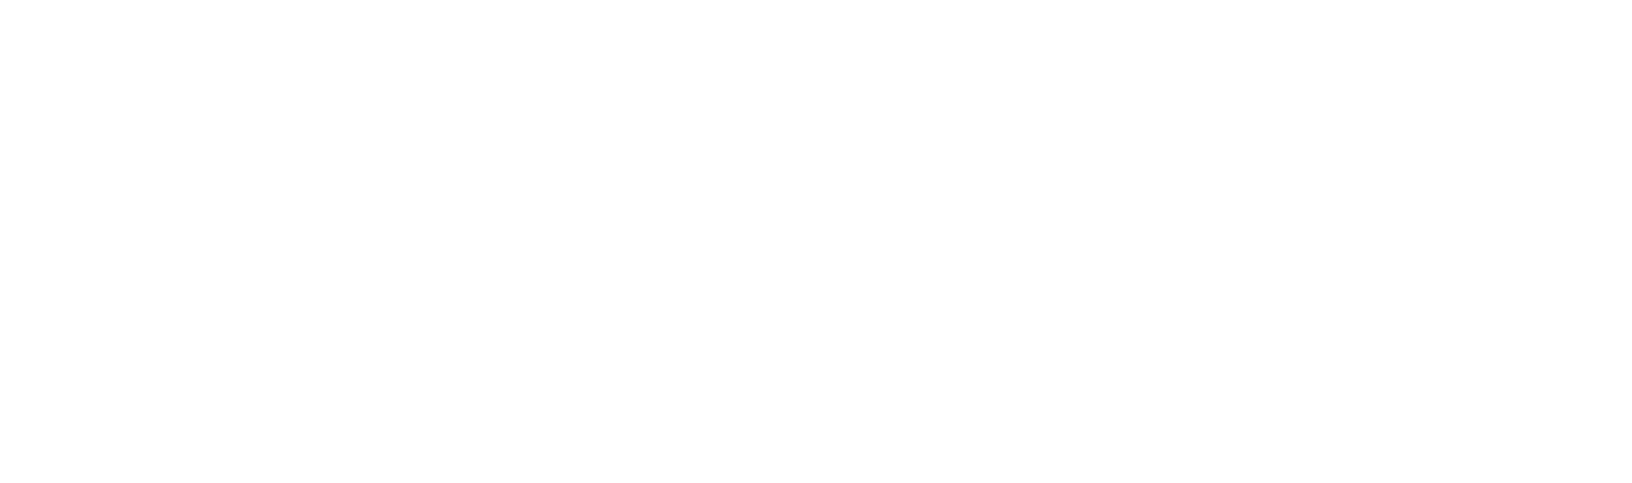 Gruas Económicas en Chile